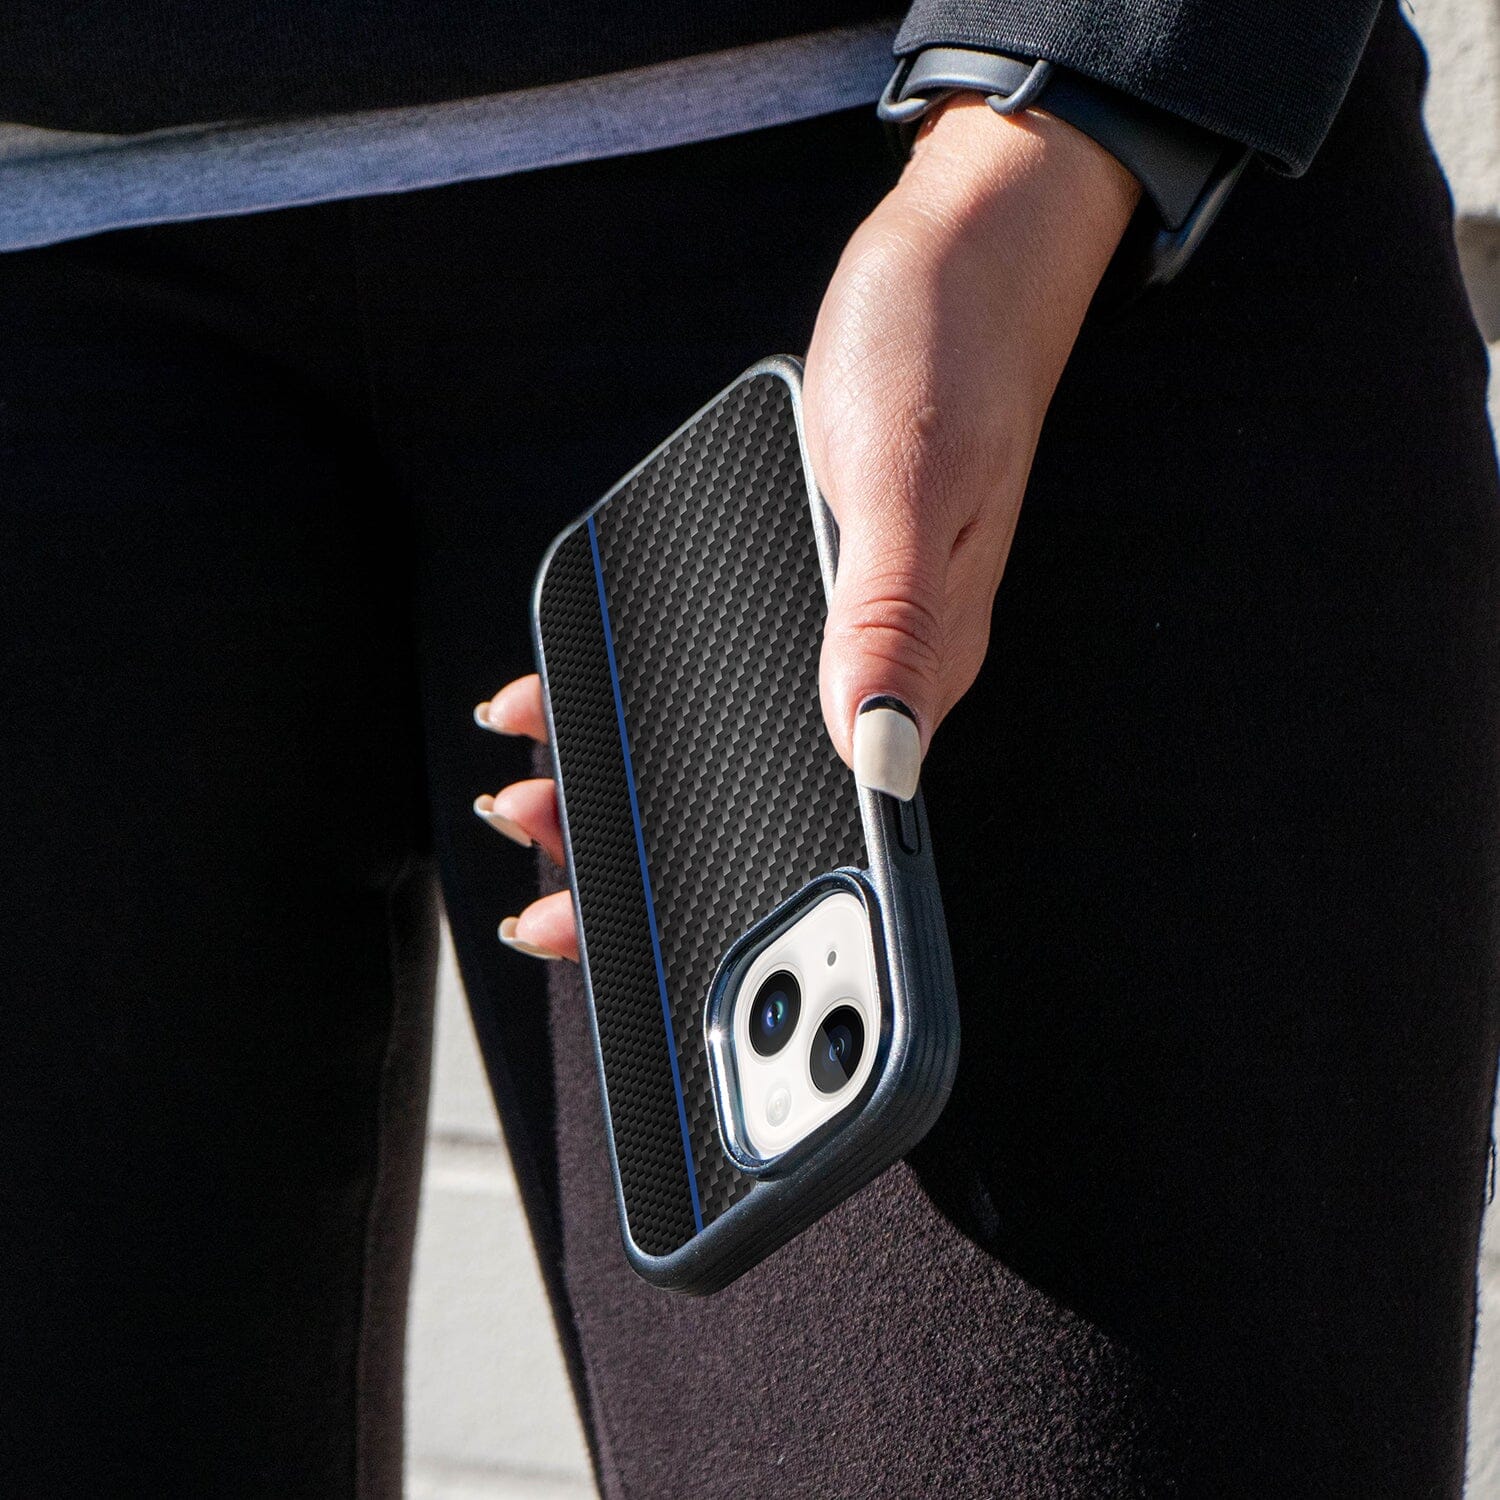 iPhone 13 Blue Line Design Fremont Grip Case Black Carbon Fiber with MagSafe (On Hand)